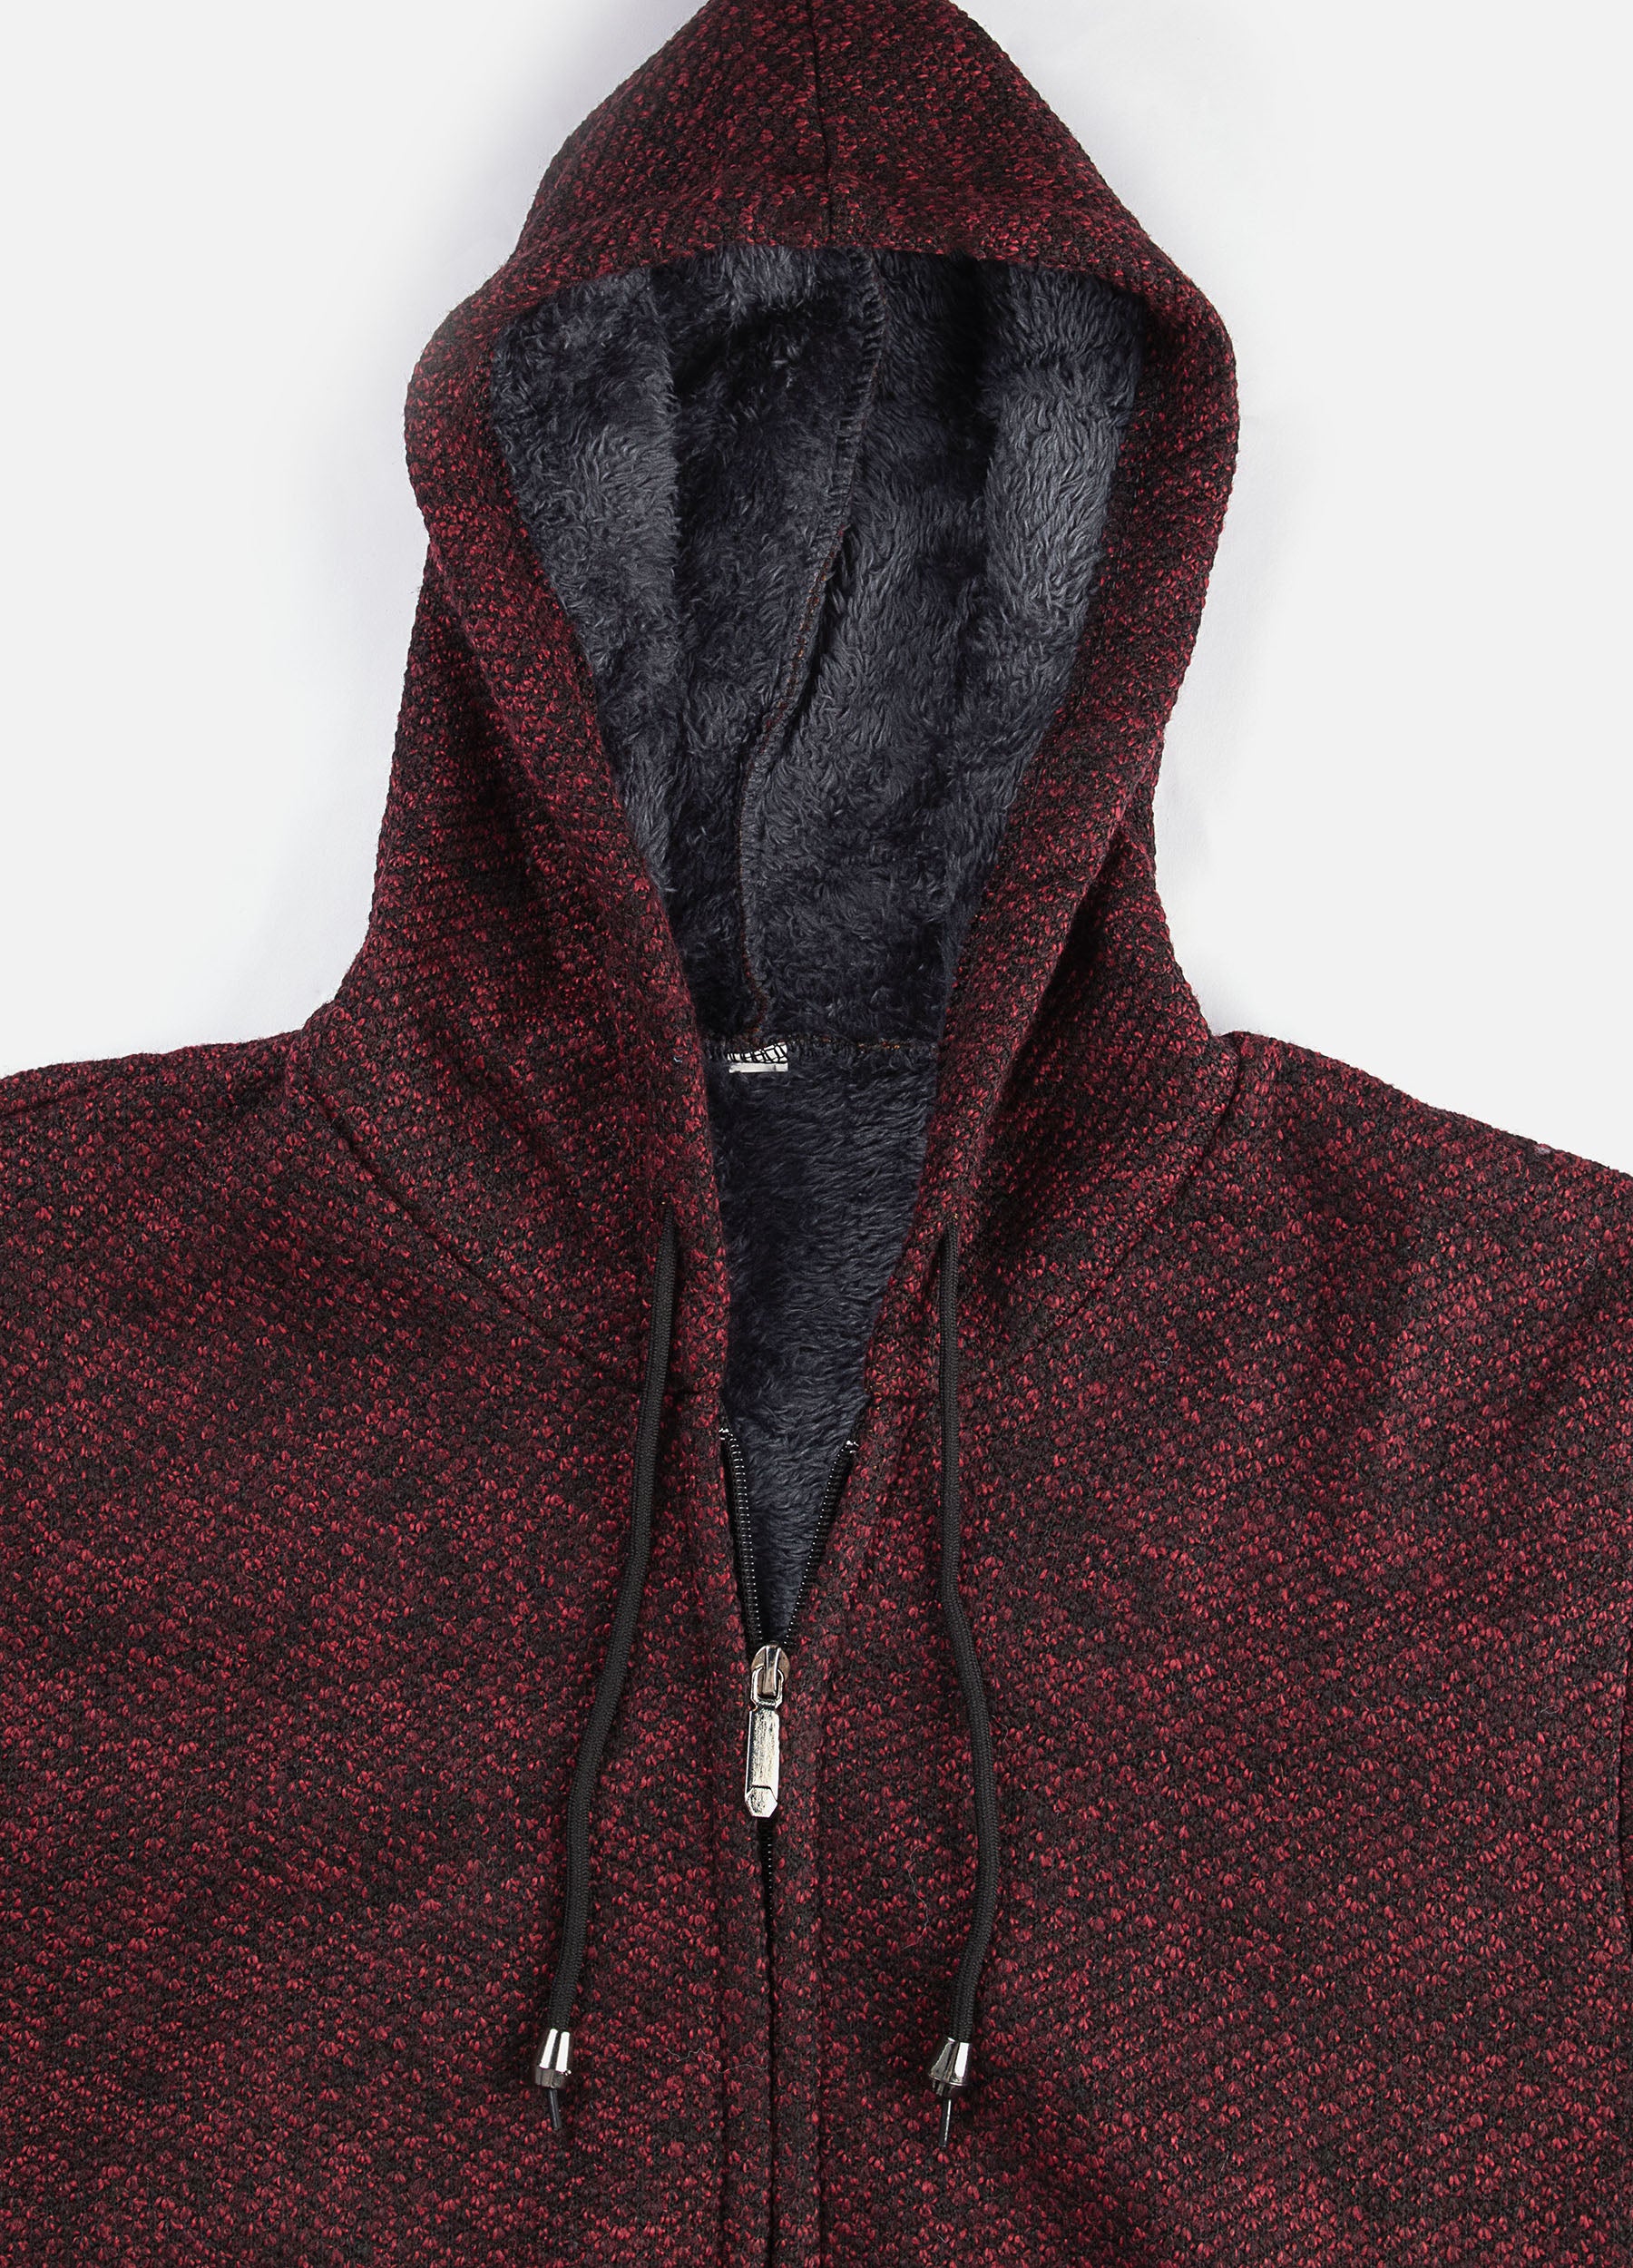 1PA1 Men's Zip Up Fleece Hooded Jacket Casual Hoodie Sweatshirt Coat